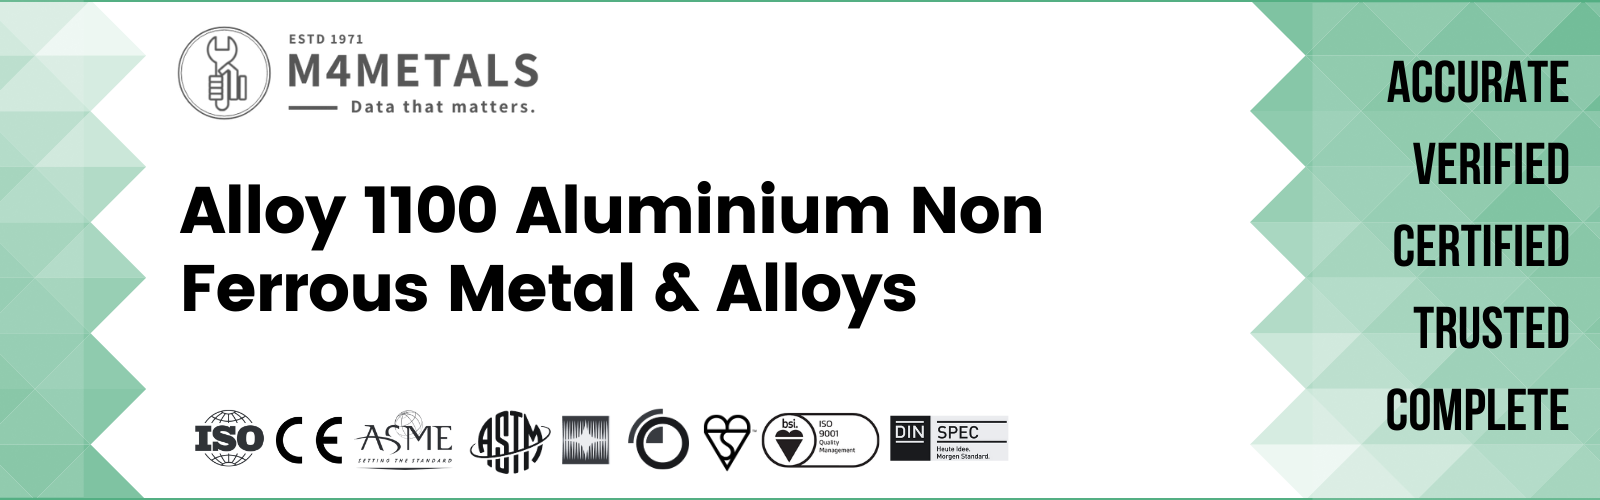 Aluminium Alloy 1100